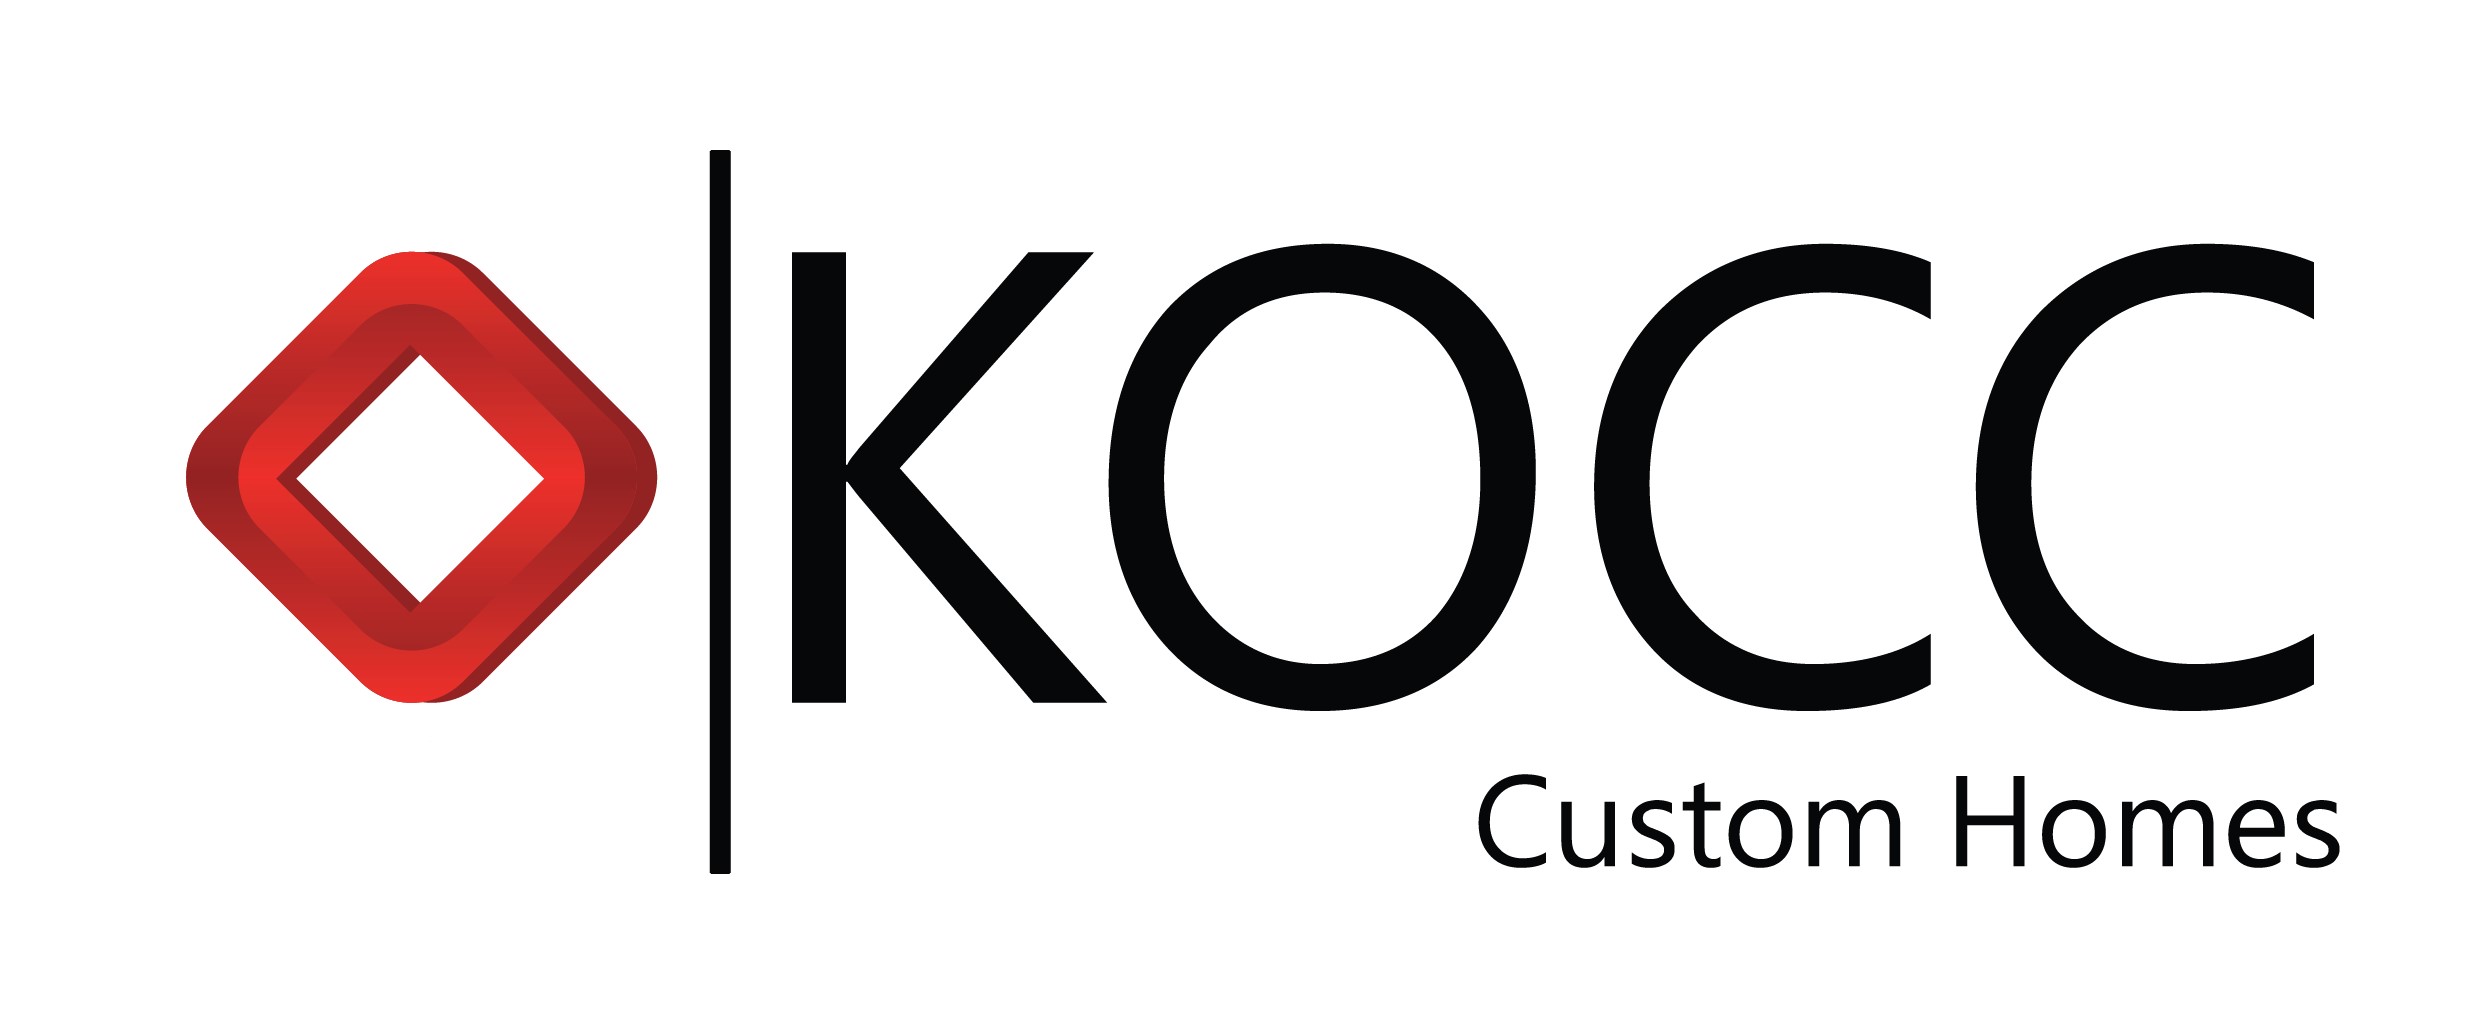 KOCC Custom Homes, Inc. Logo